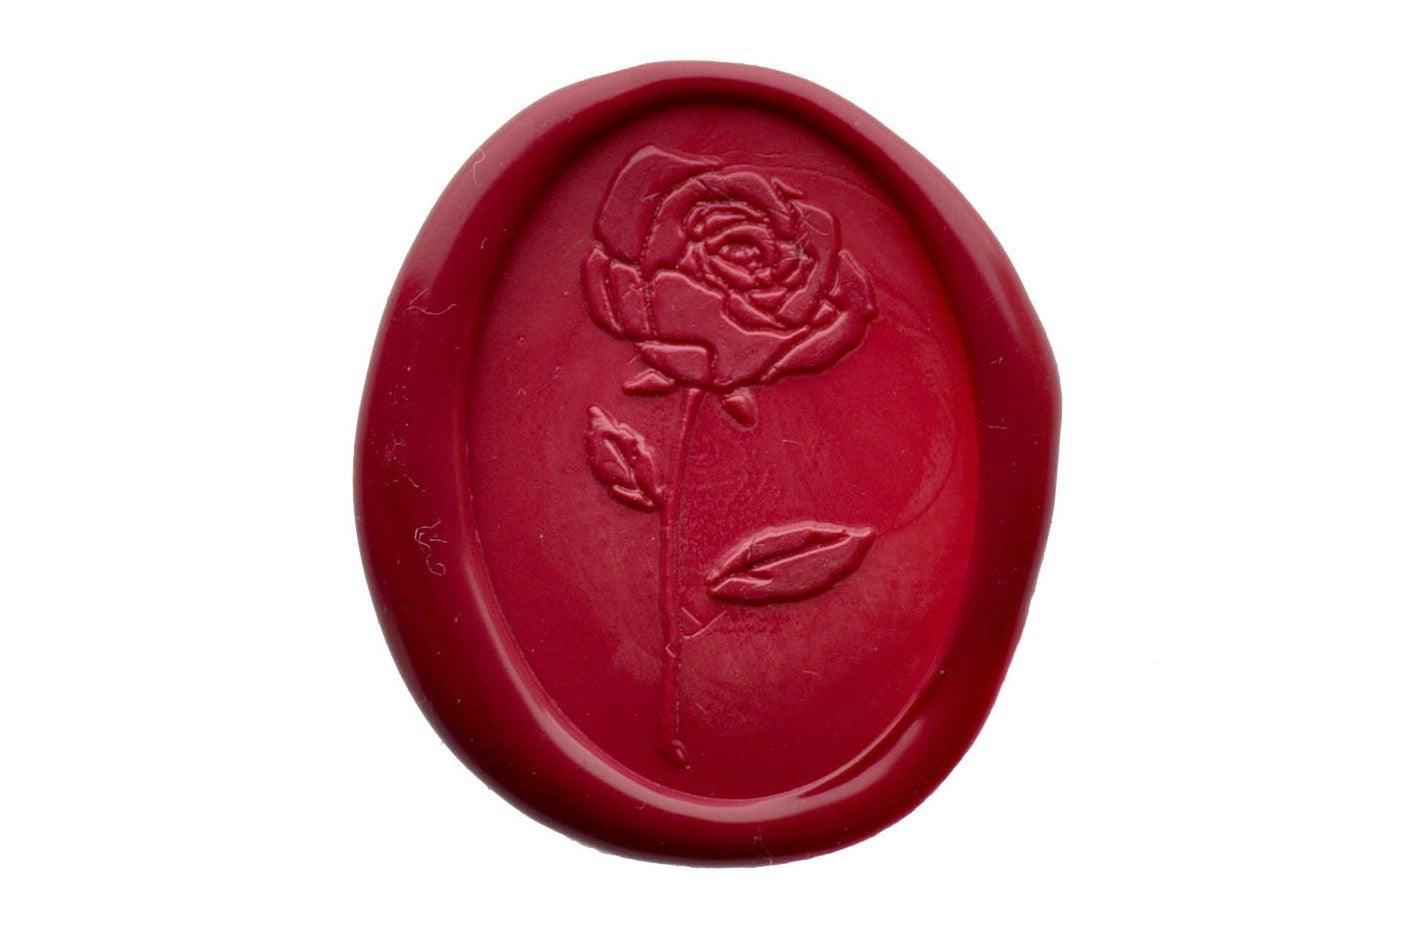 Rose Wax Seal Stamp